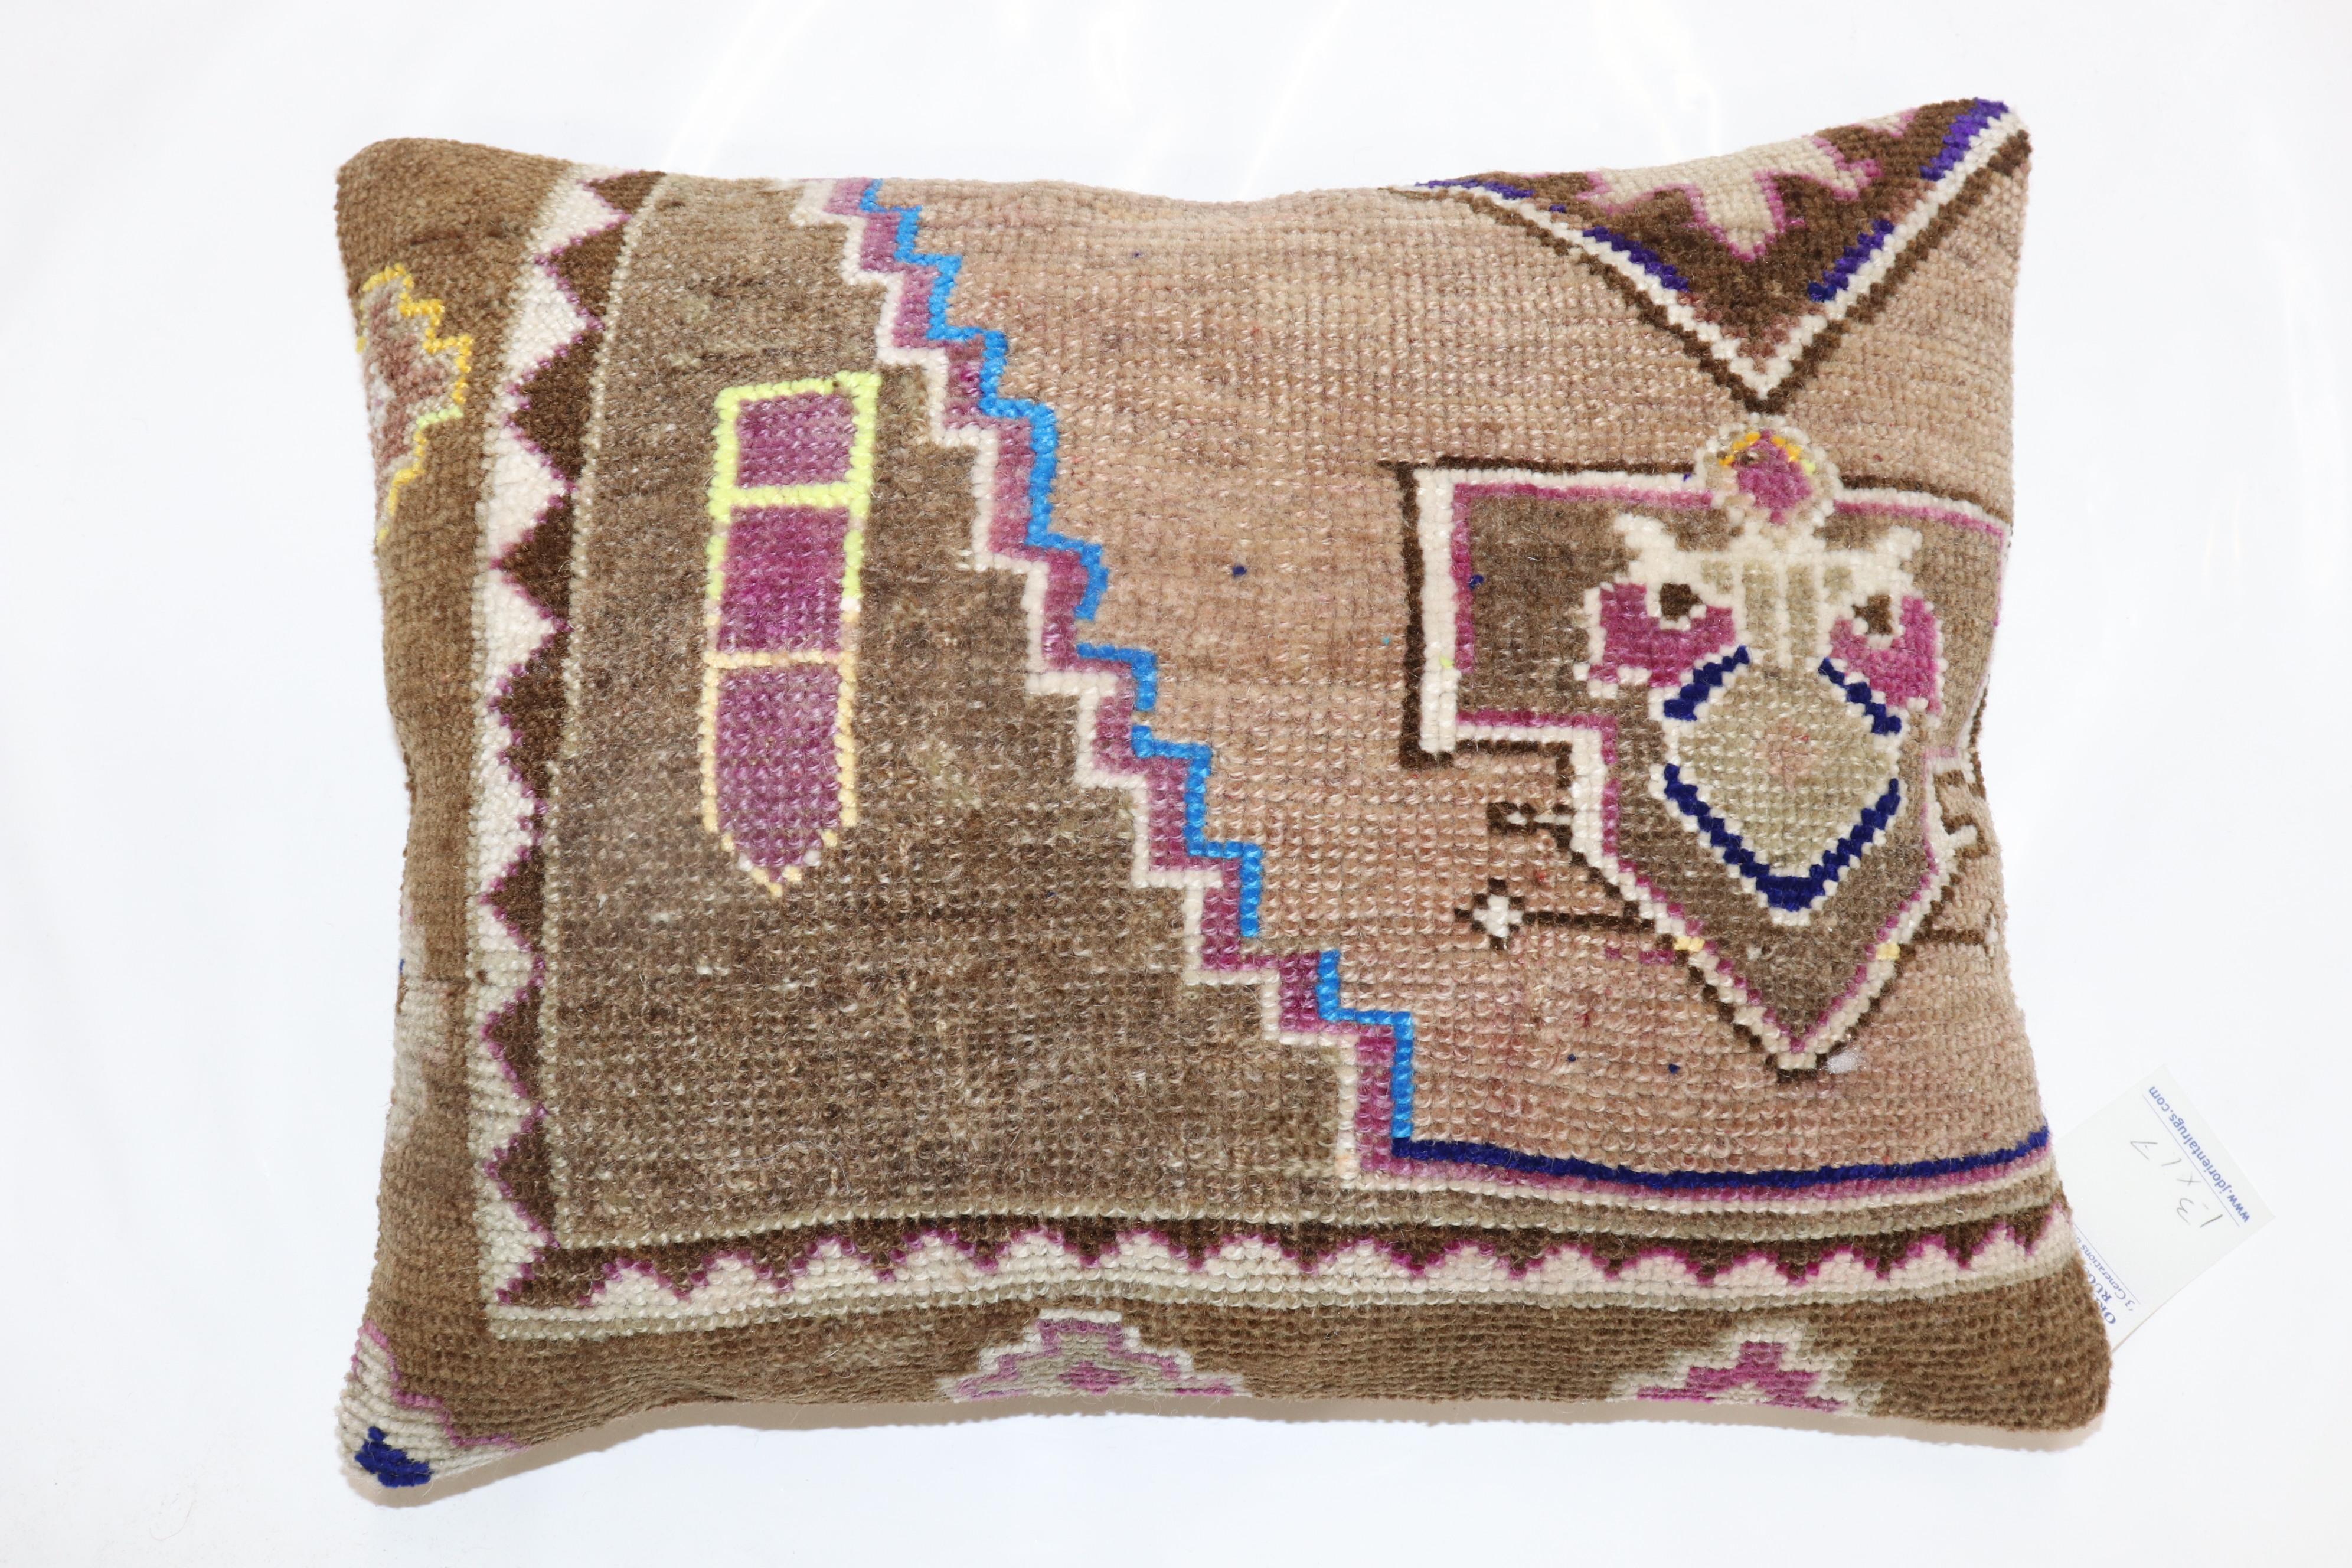 Großes Kissen aus einem alten türkischen Kars-Teppich

Maße: 15'' x 19''.